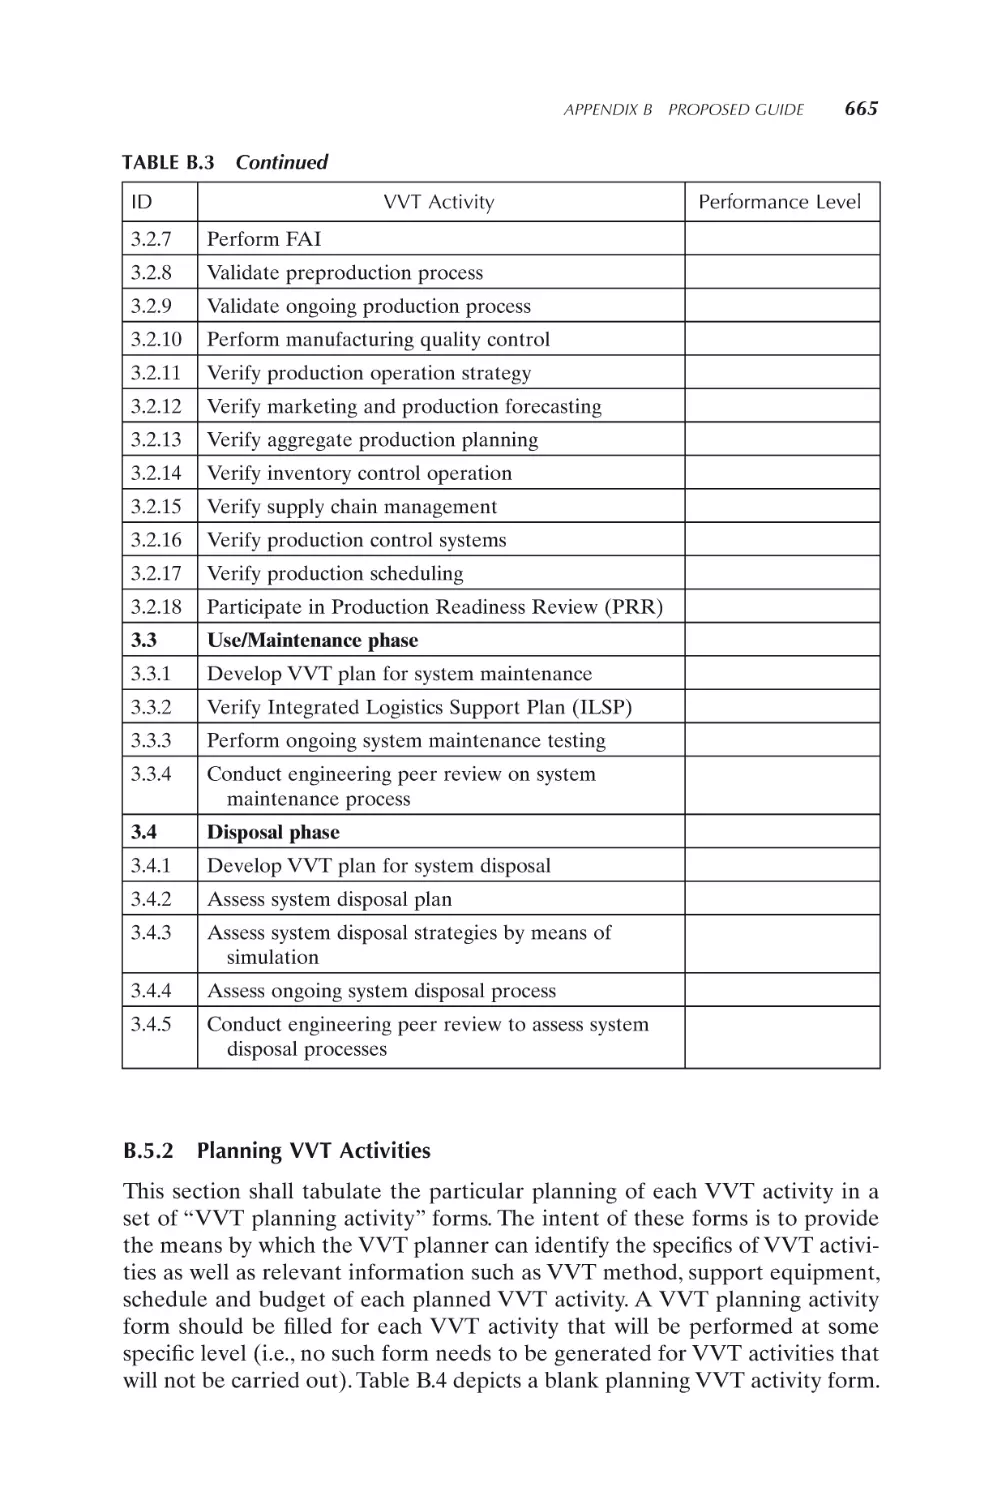 B.5.2 Planning VVT Activities